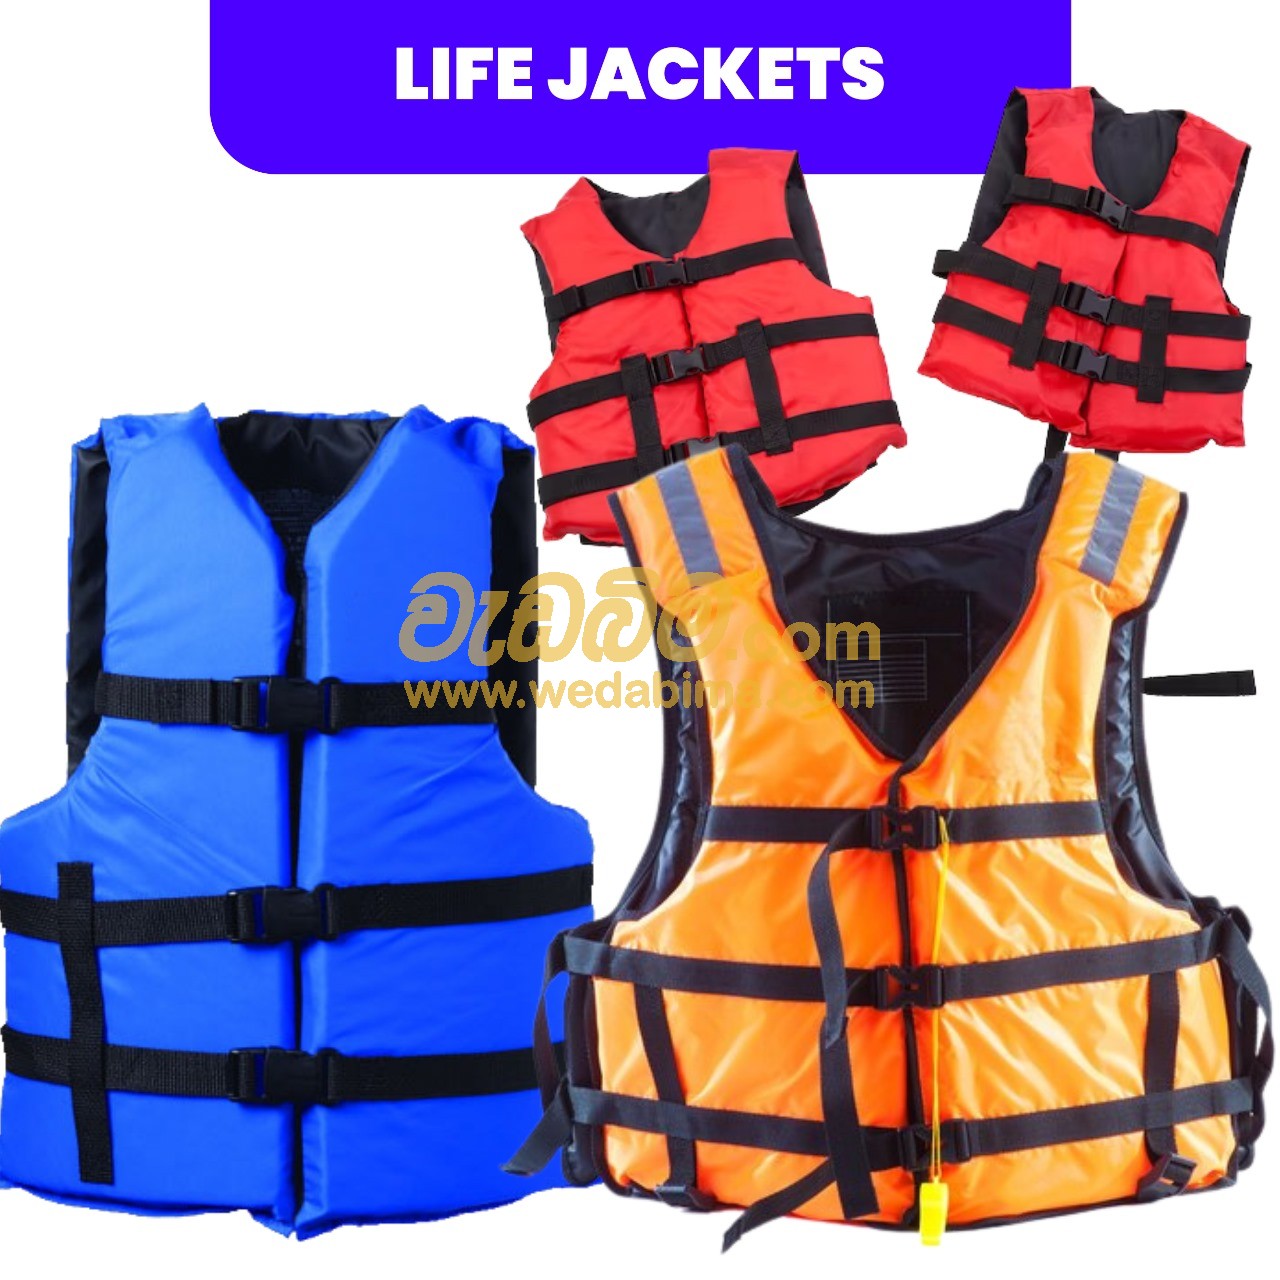 Safety Jackets for Sale Sri Lanka